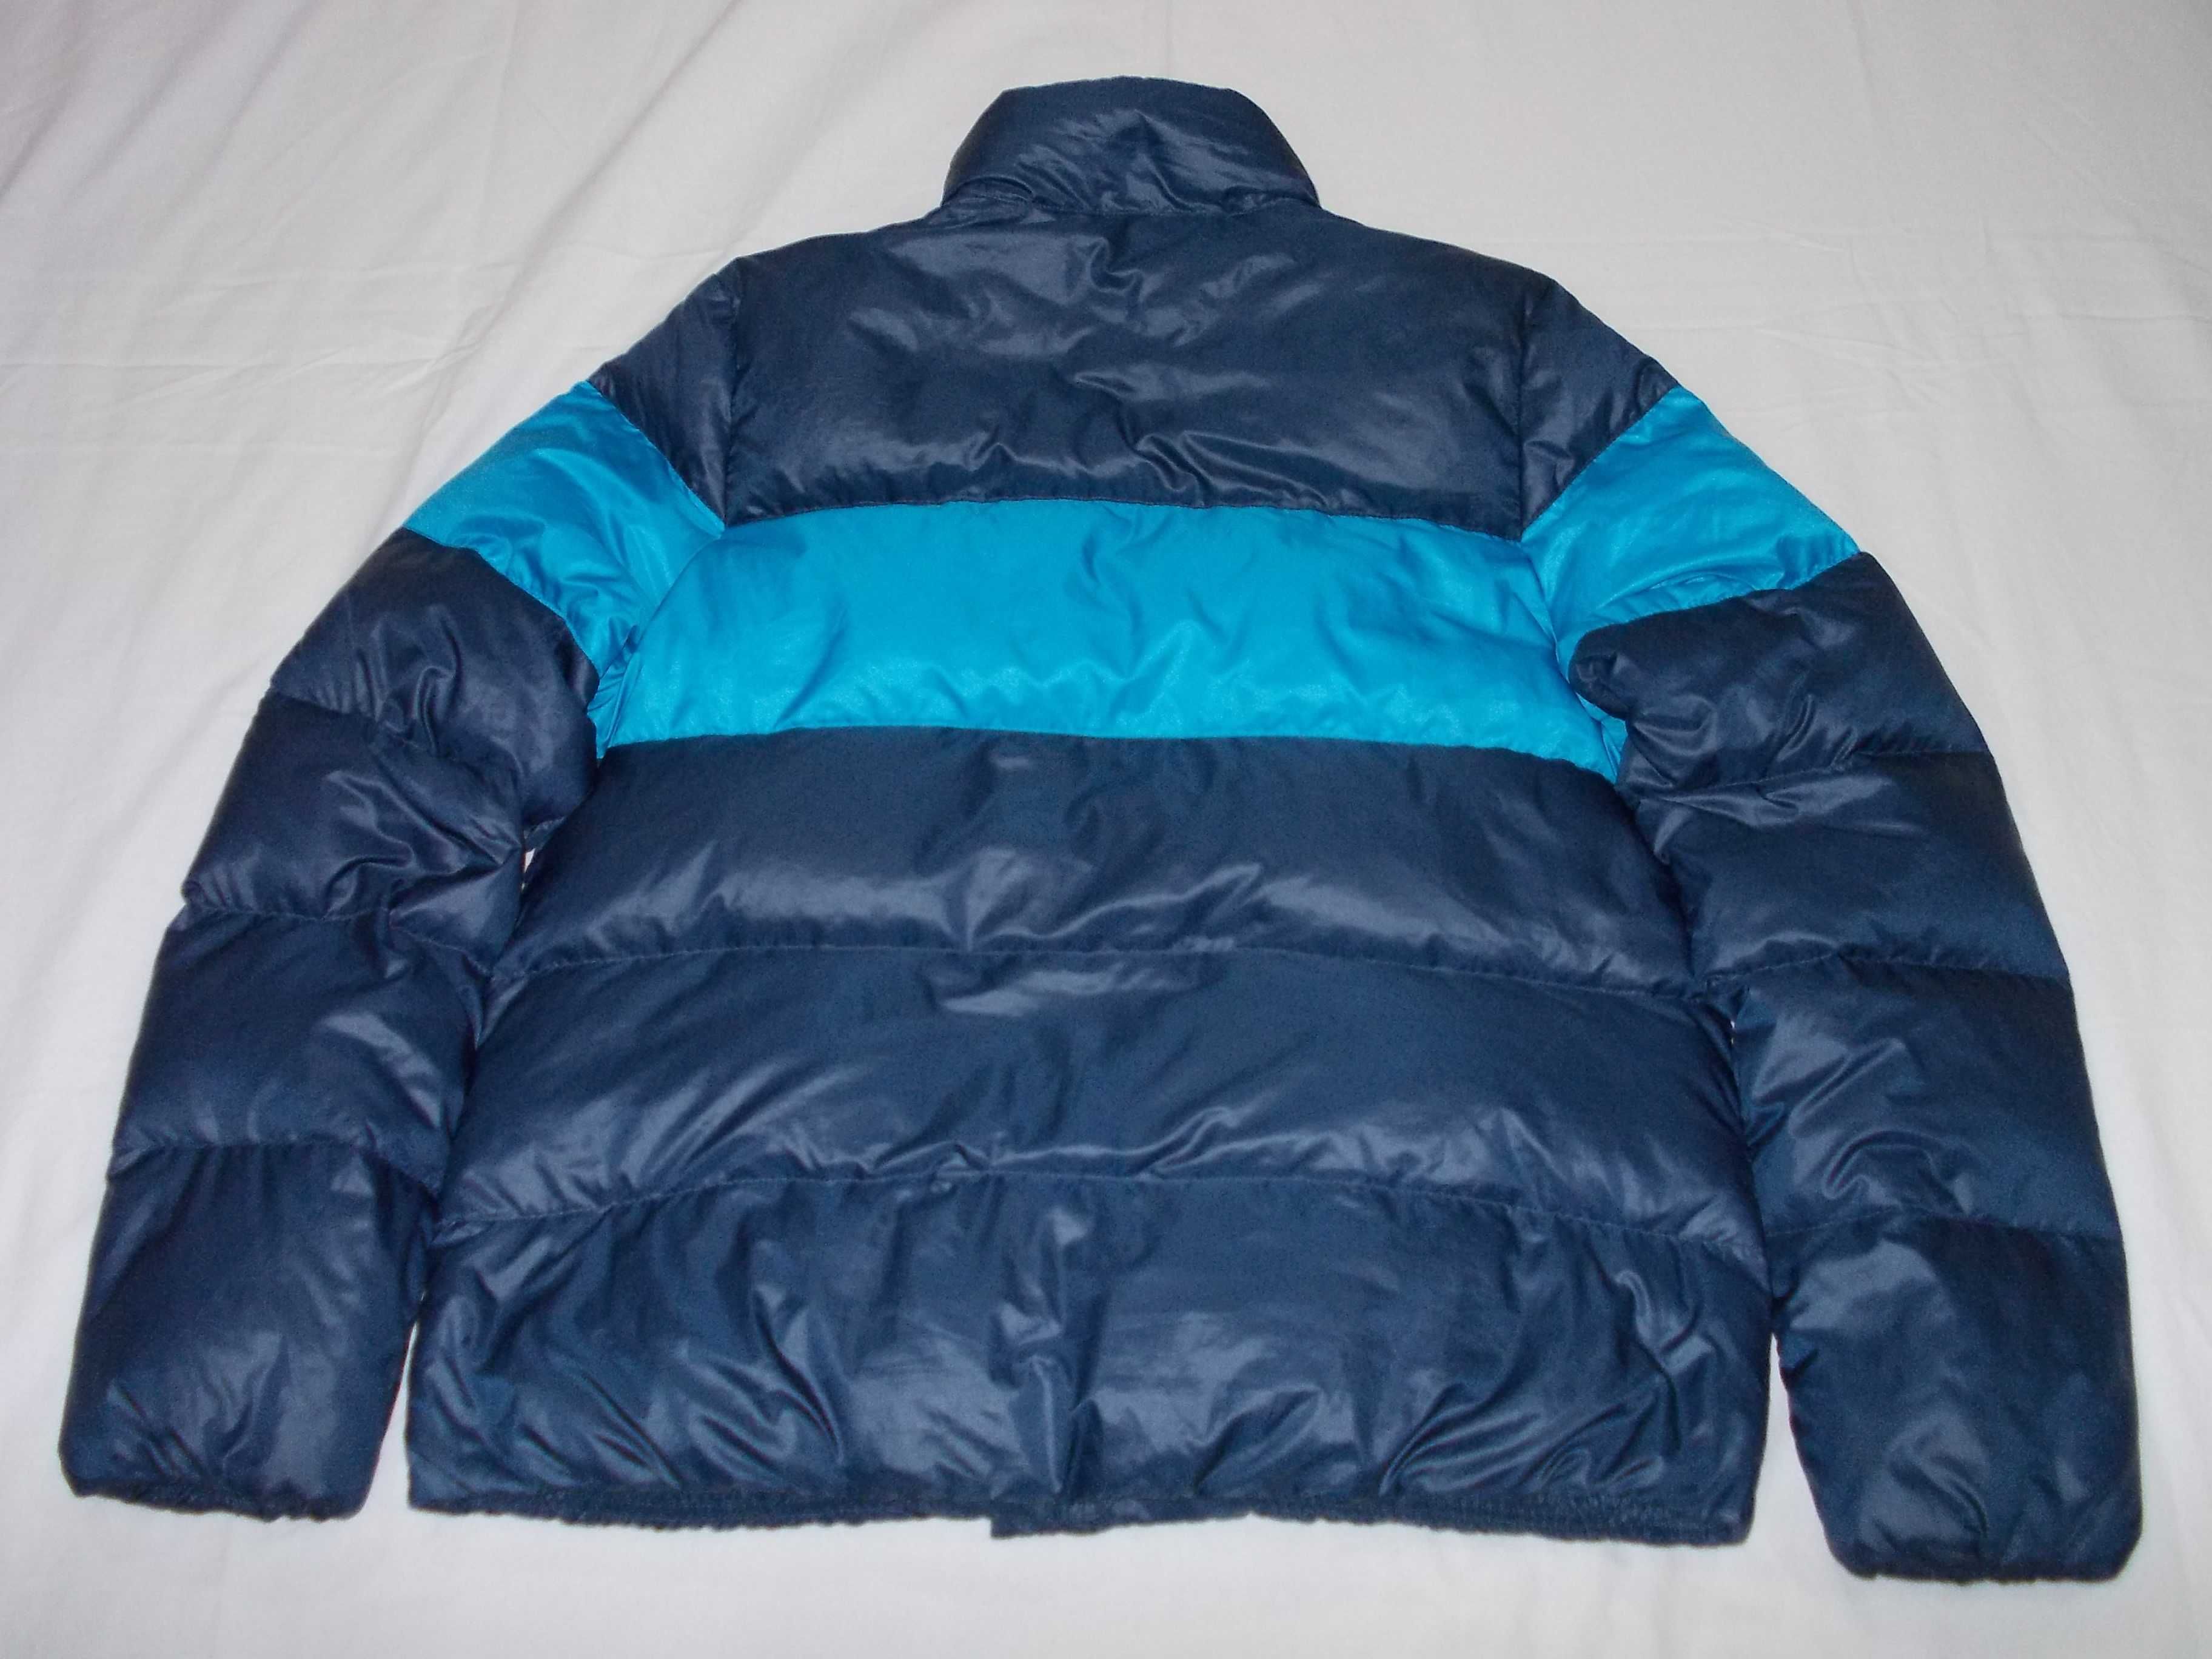 Geacă Patagonia - Nike, puf W 550 / Jacketă-Bluzon - Polar Colmar